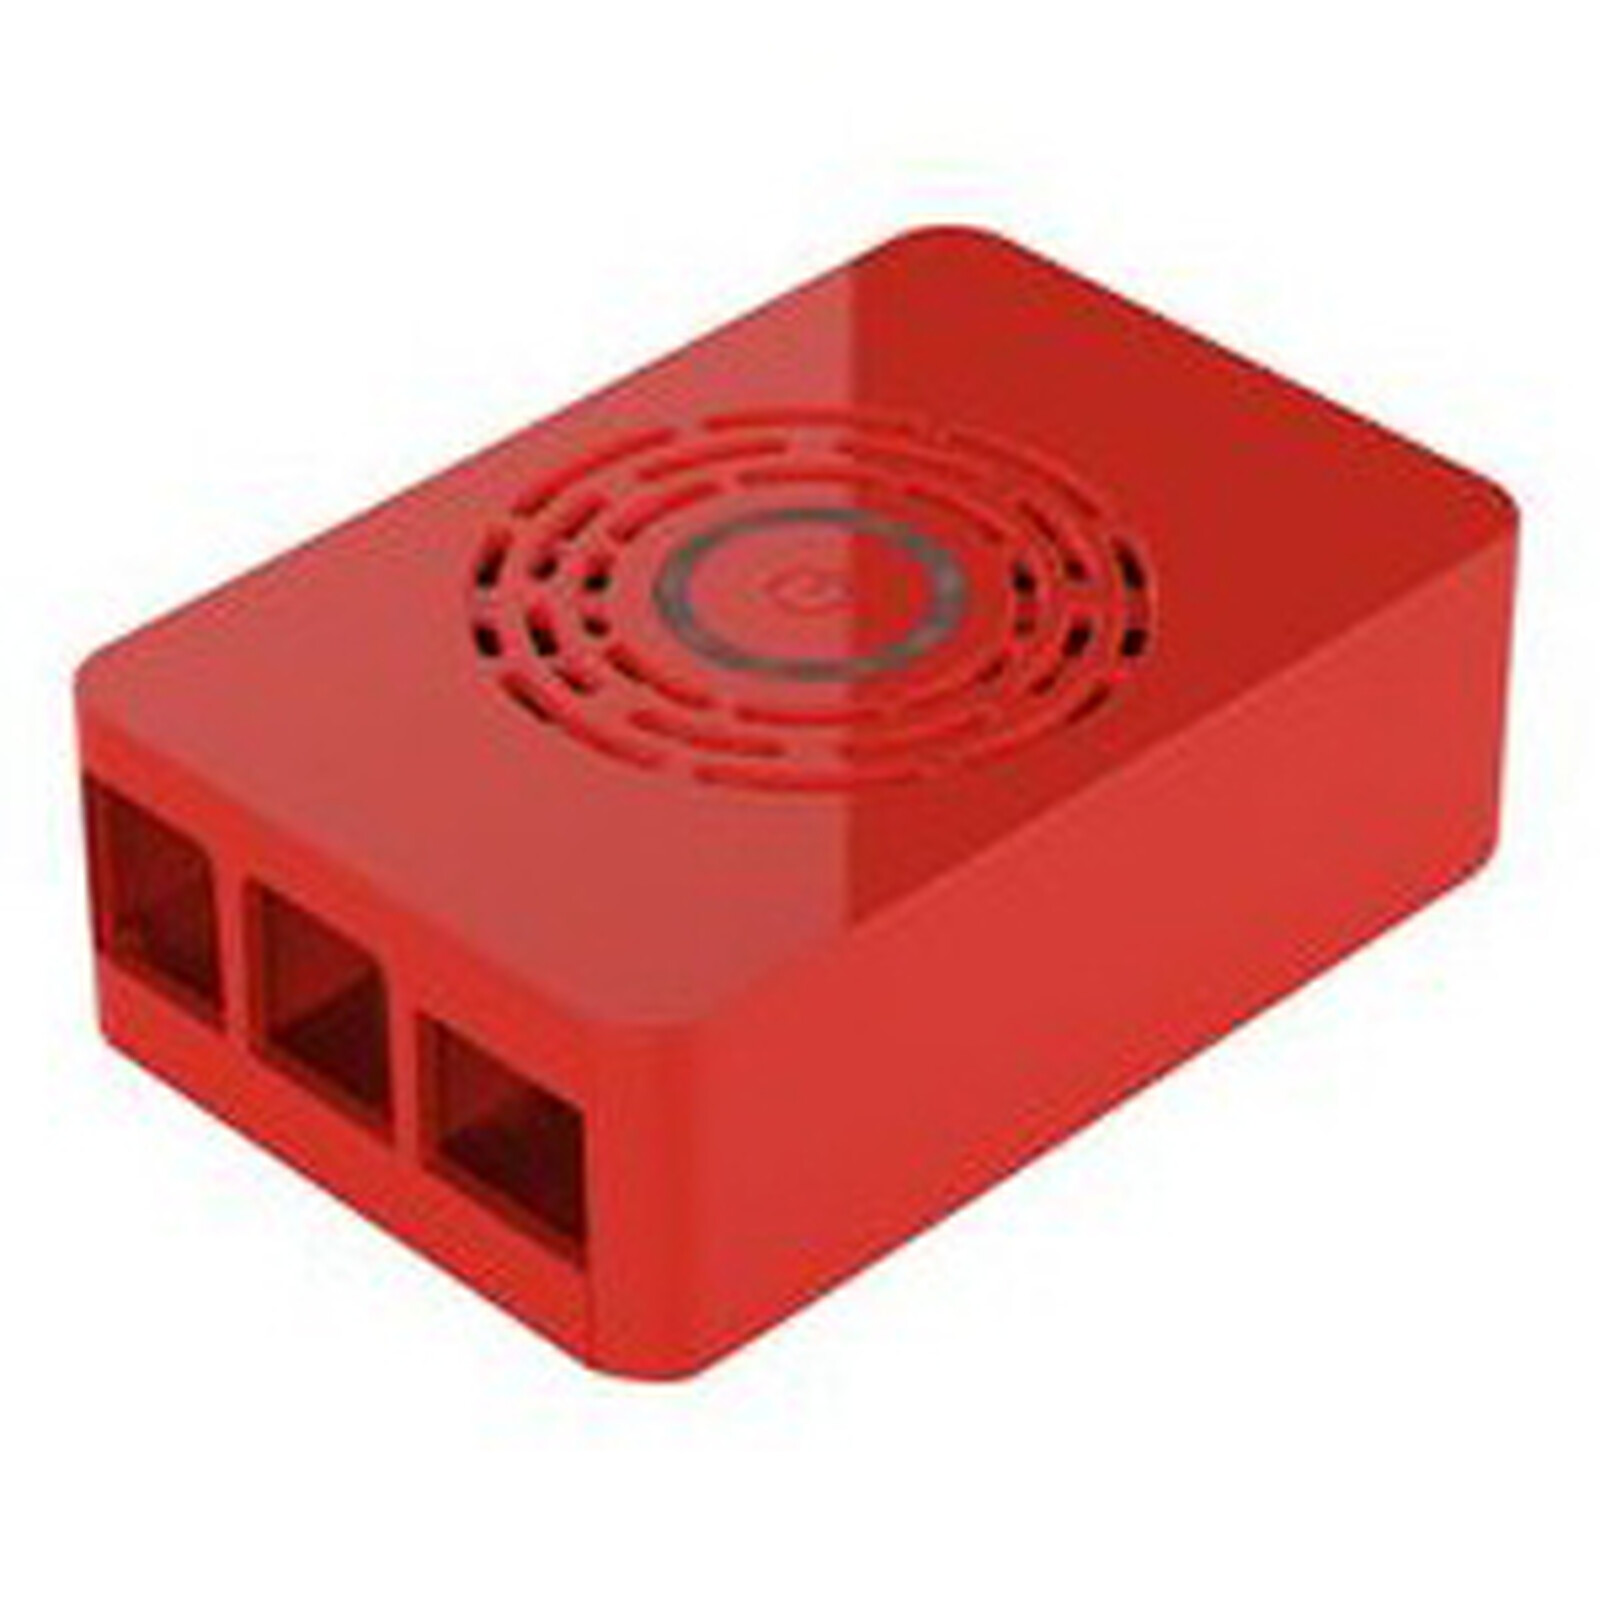 Boitier pour Raspberry Pi 4 Model B avec bouton d'alimentation (Rouge) -  Boîtier Raspberry Pi - Garantie 3 ans LDLC